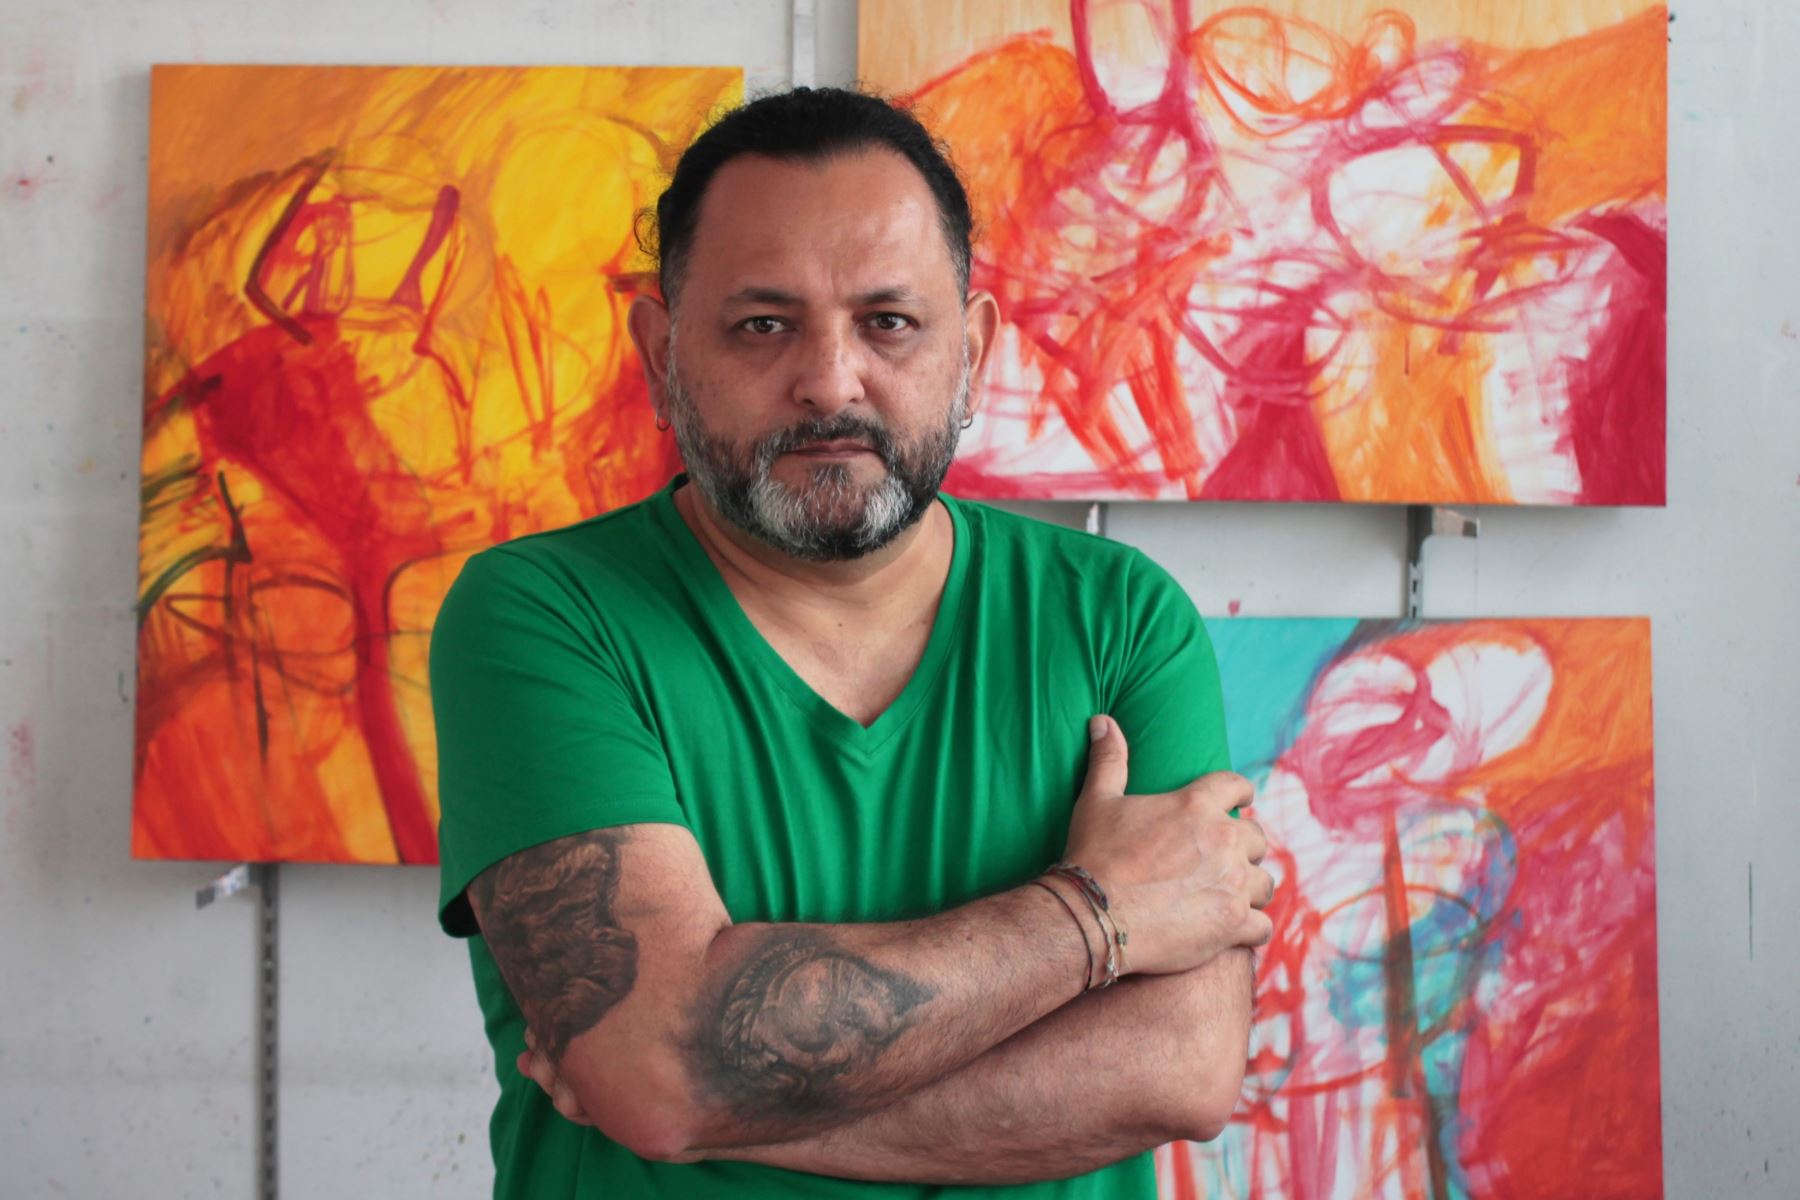 Artista plástico Jorge Vela inaugura hoy, jueves 17, su muestra virtual 